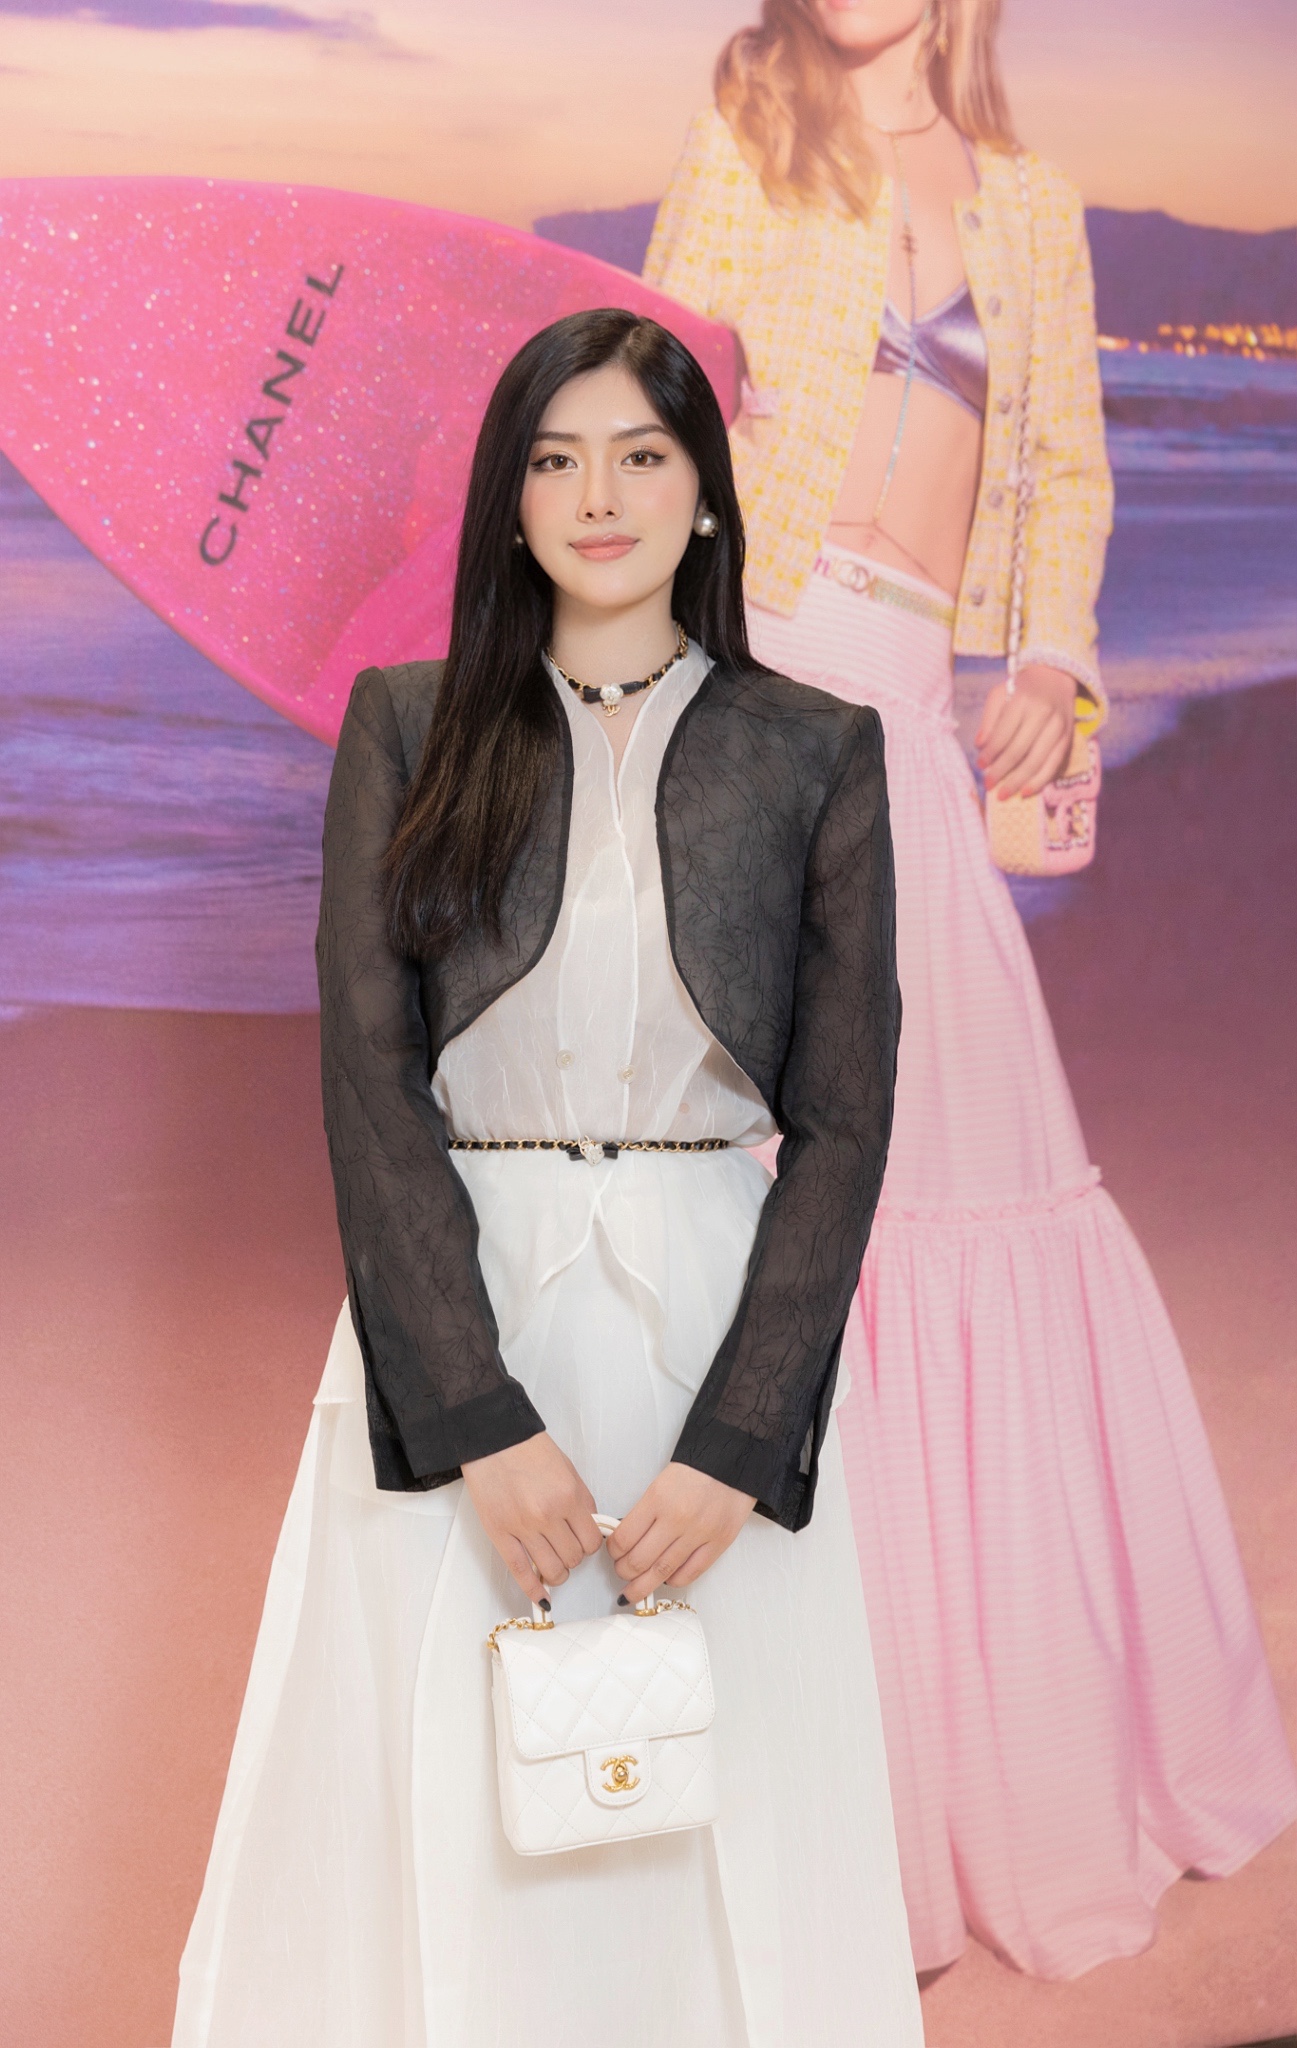 Hoa hậu Huỳnh Tiên tái xuất sau khi giảm 20kg - Ảnh 3.